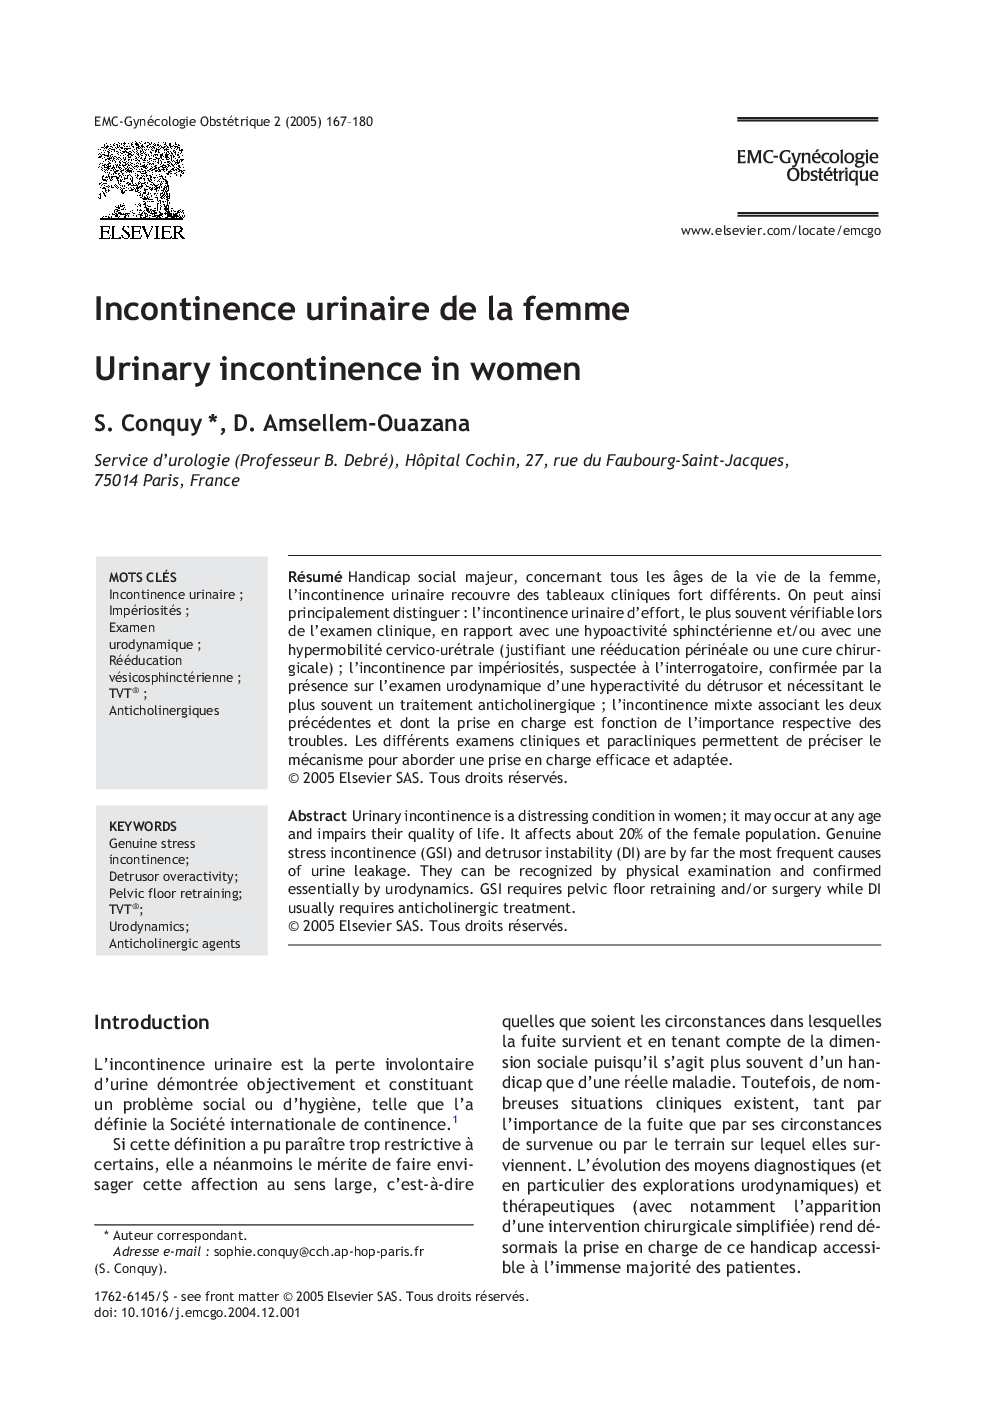 Incontinence urinaire de la femme